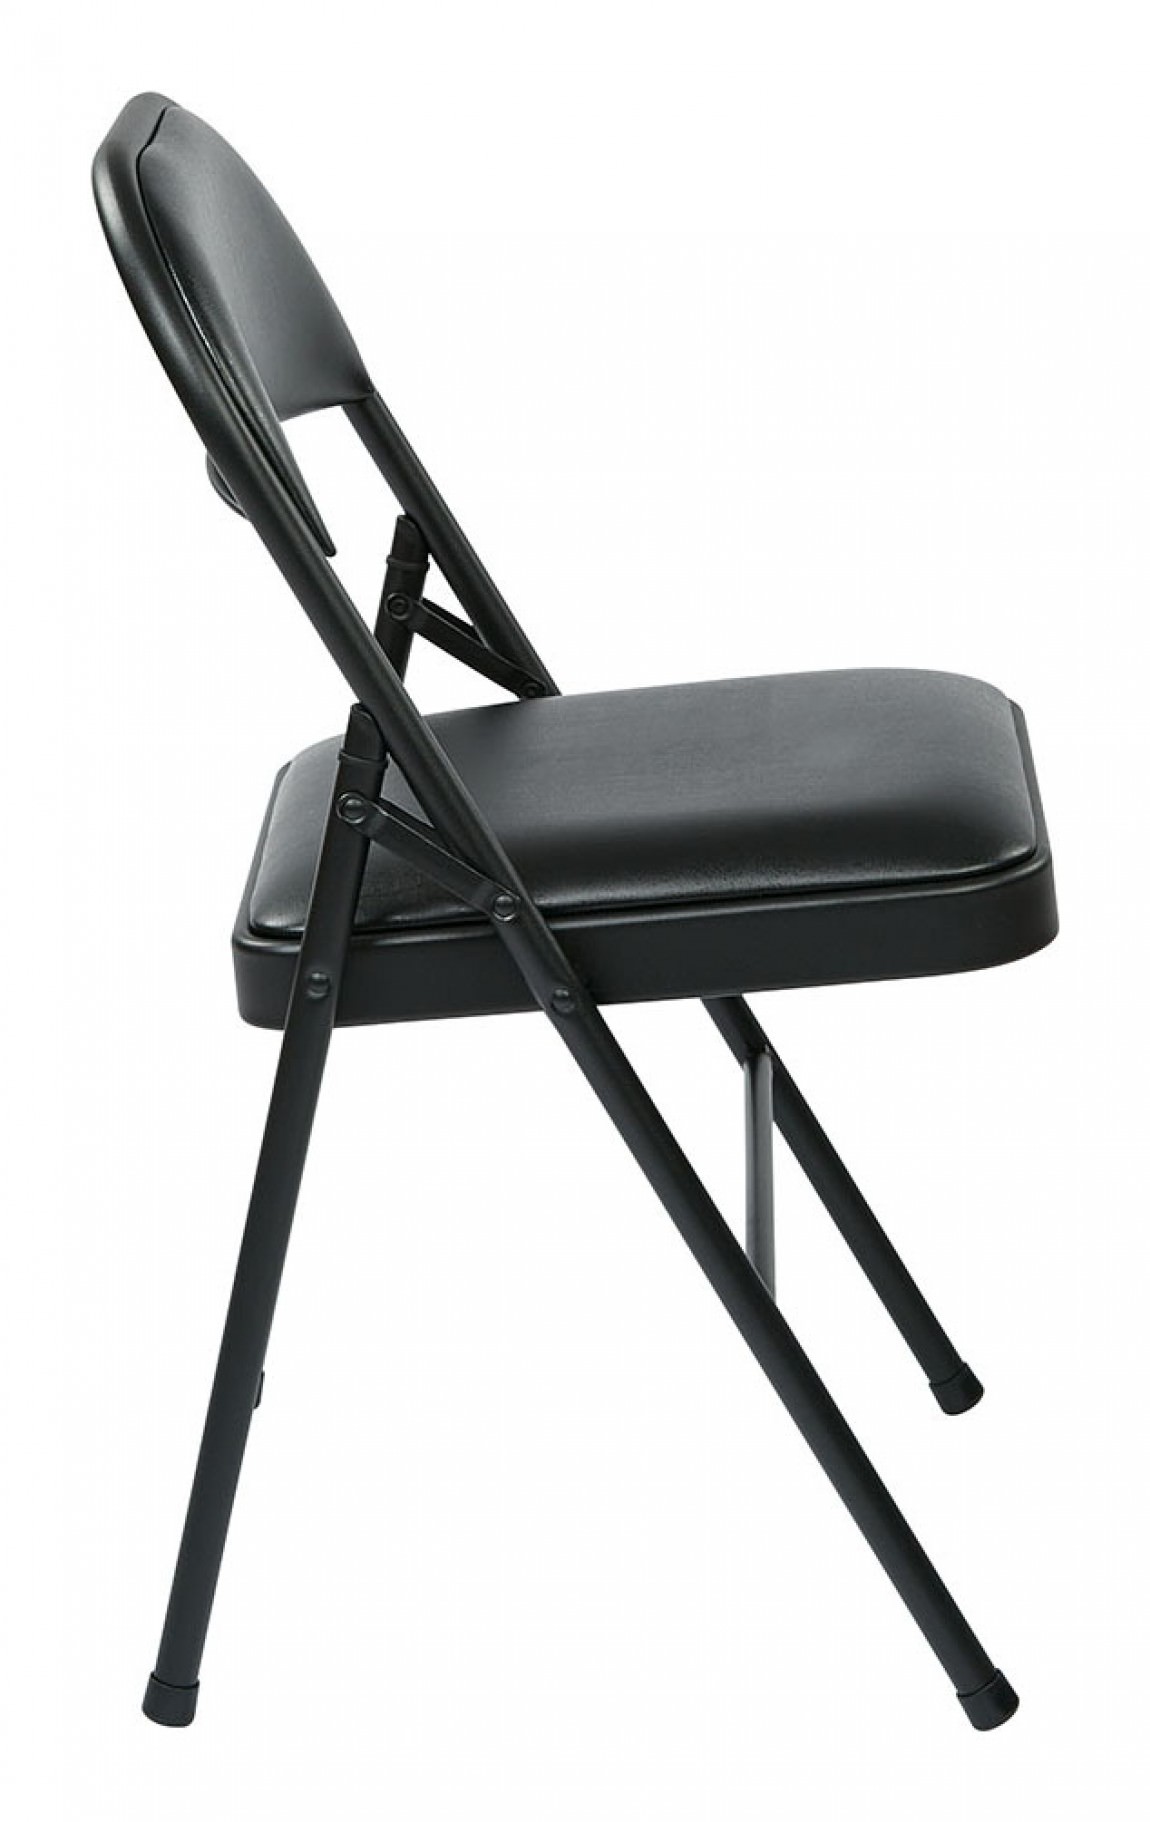 https://madisonliquidators.com/images/p/1150/24905-padded-folding-chair-4-pack-2.jpg